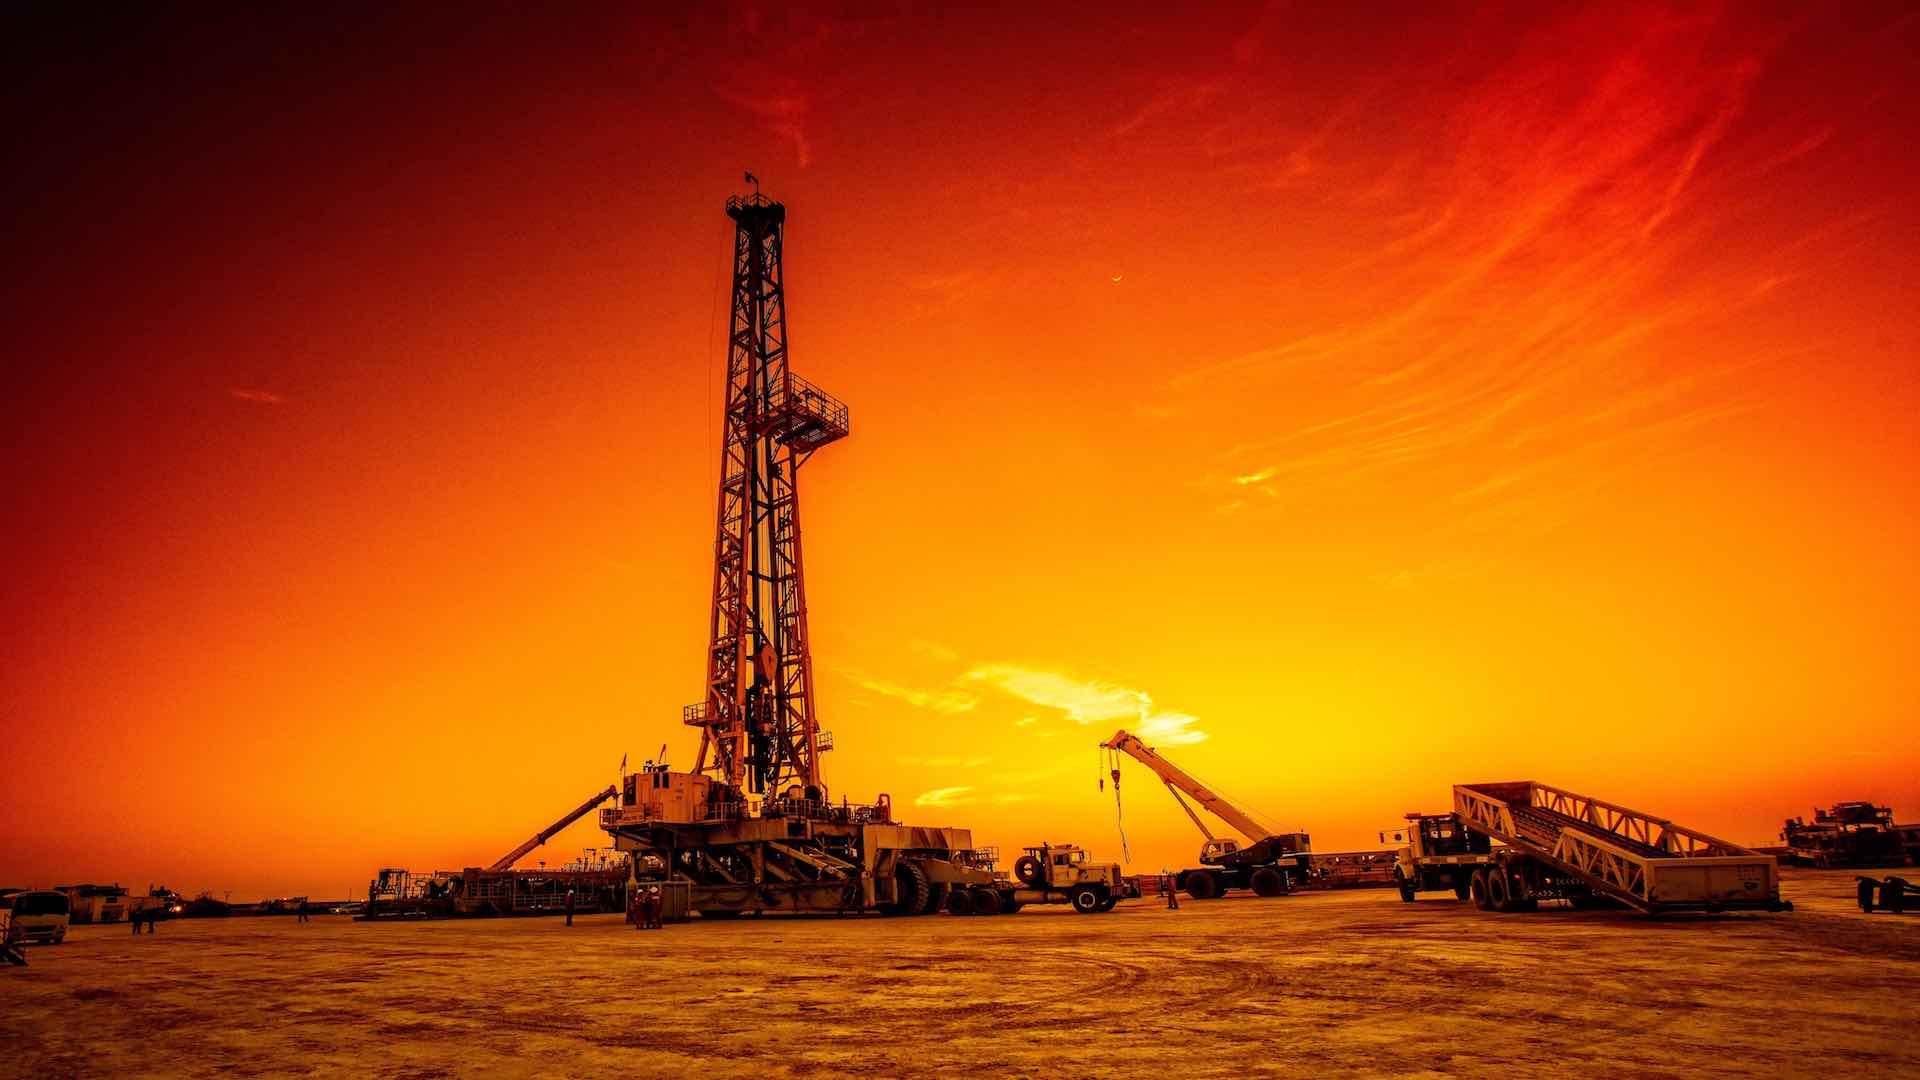 تجزیہ کاروں نے مشرق وسطیٰ کے بڑھتے ہوئے تنازعات کی وجہ سے تیل کی قیمتوں میں $90 کا اندازہ لگایا ہے۔